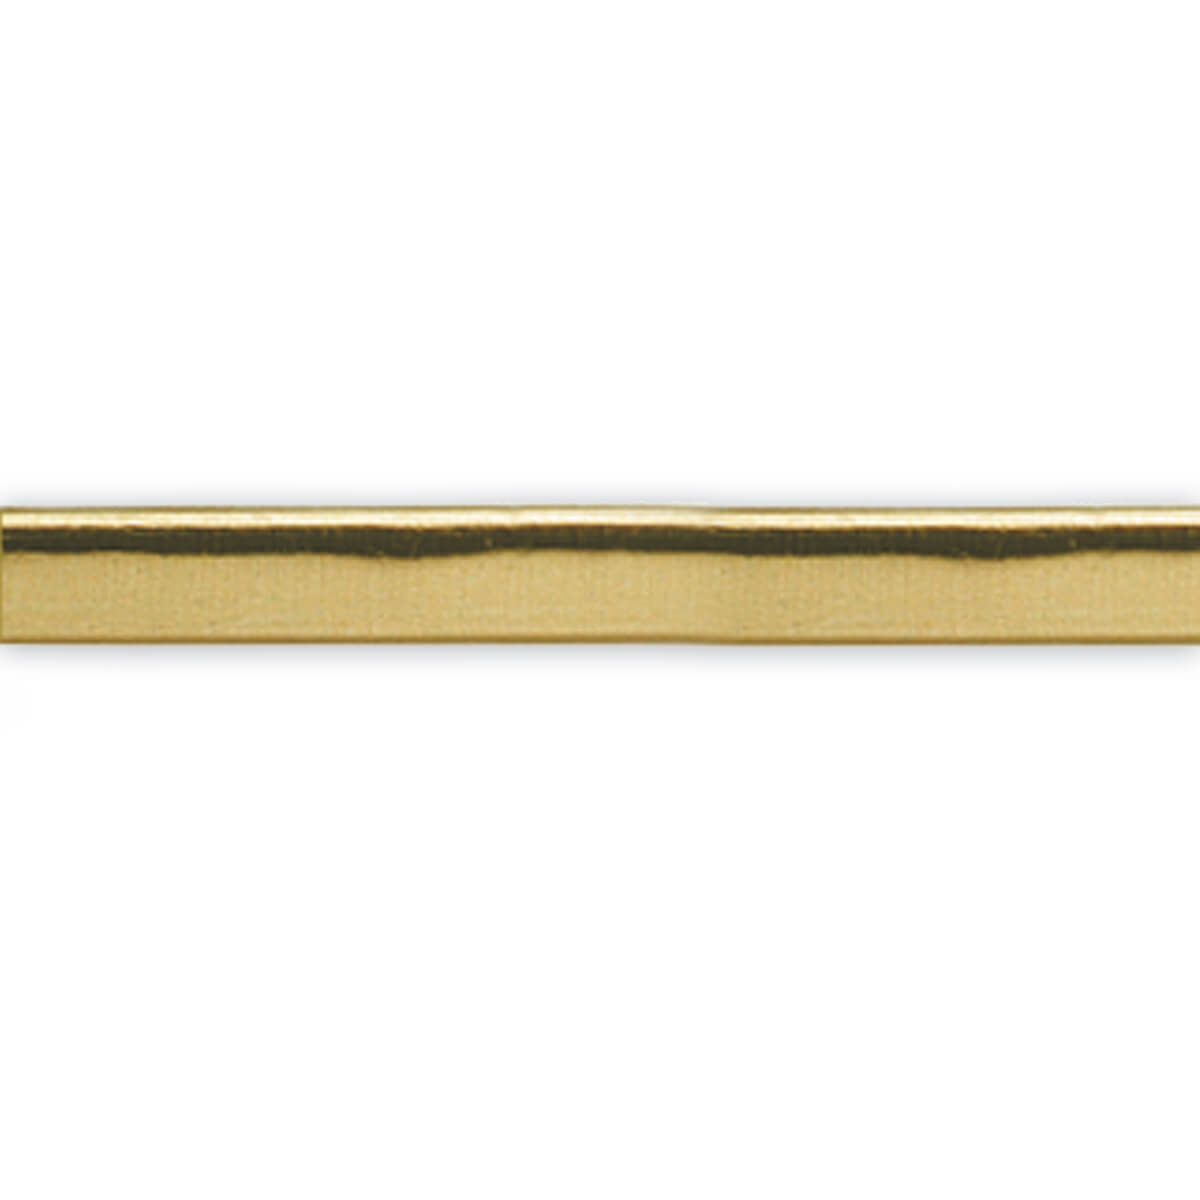 Goldstreifen flach - 450 x 5 mm